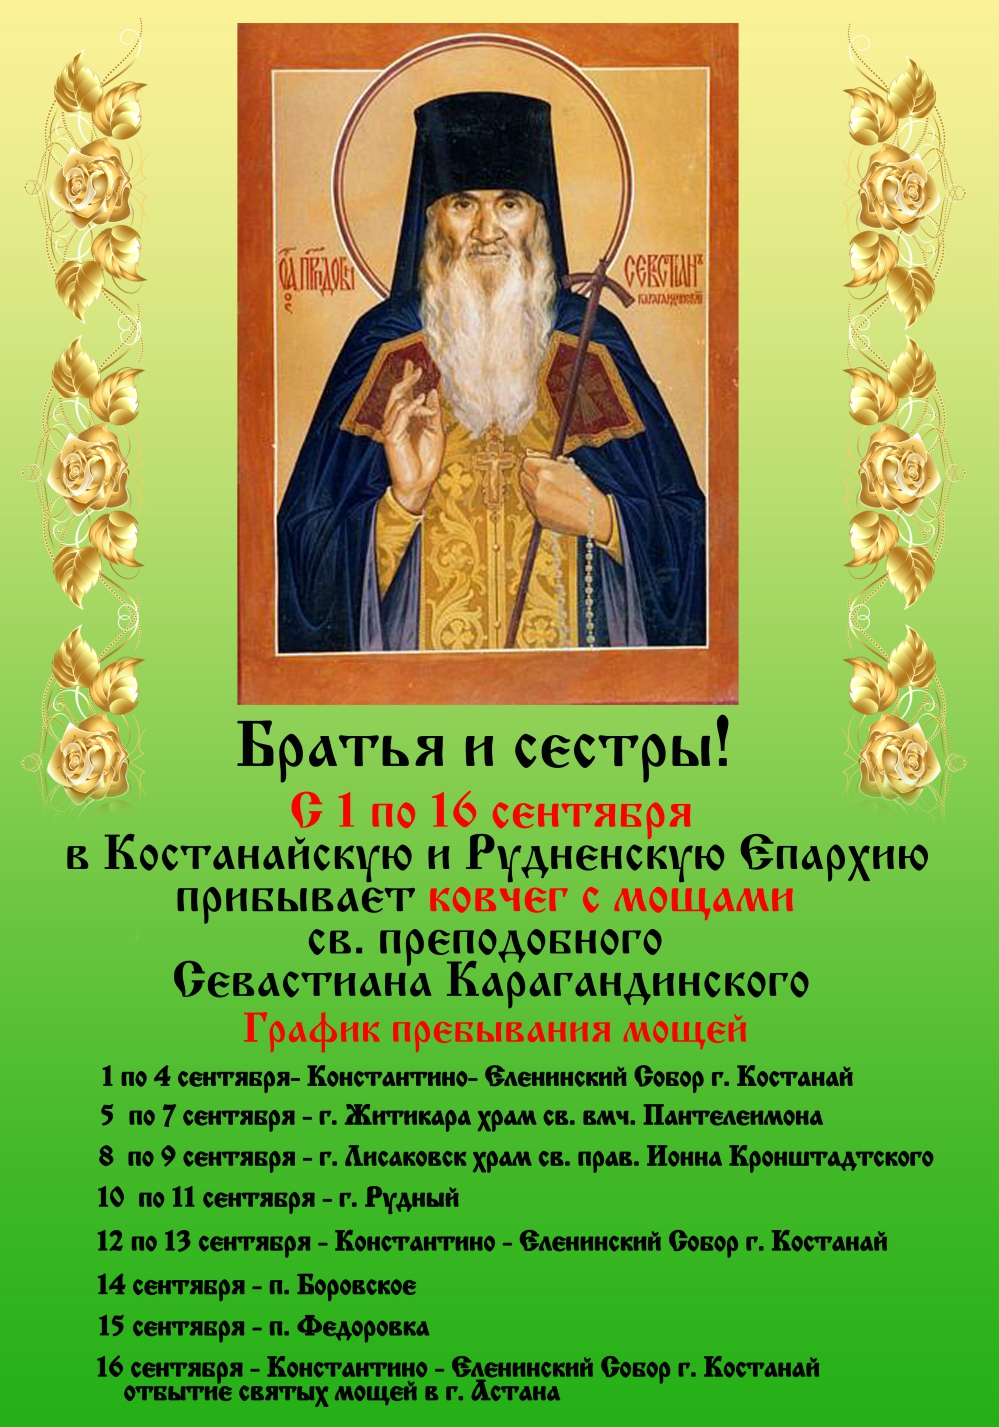 мощи преподобного Севастиана Карагандинского в Костанайской и Рудненской епархии